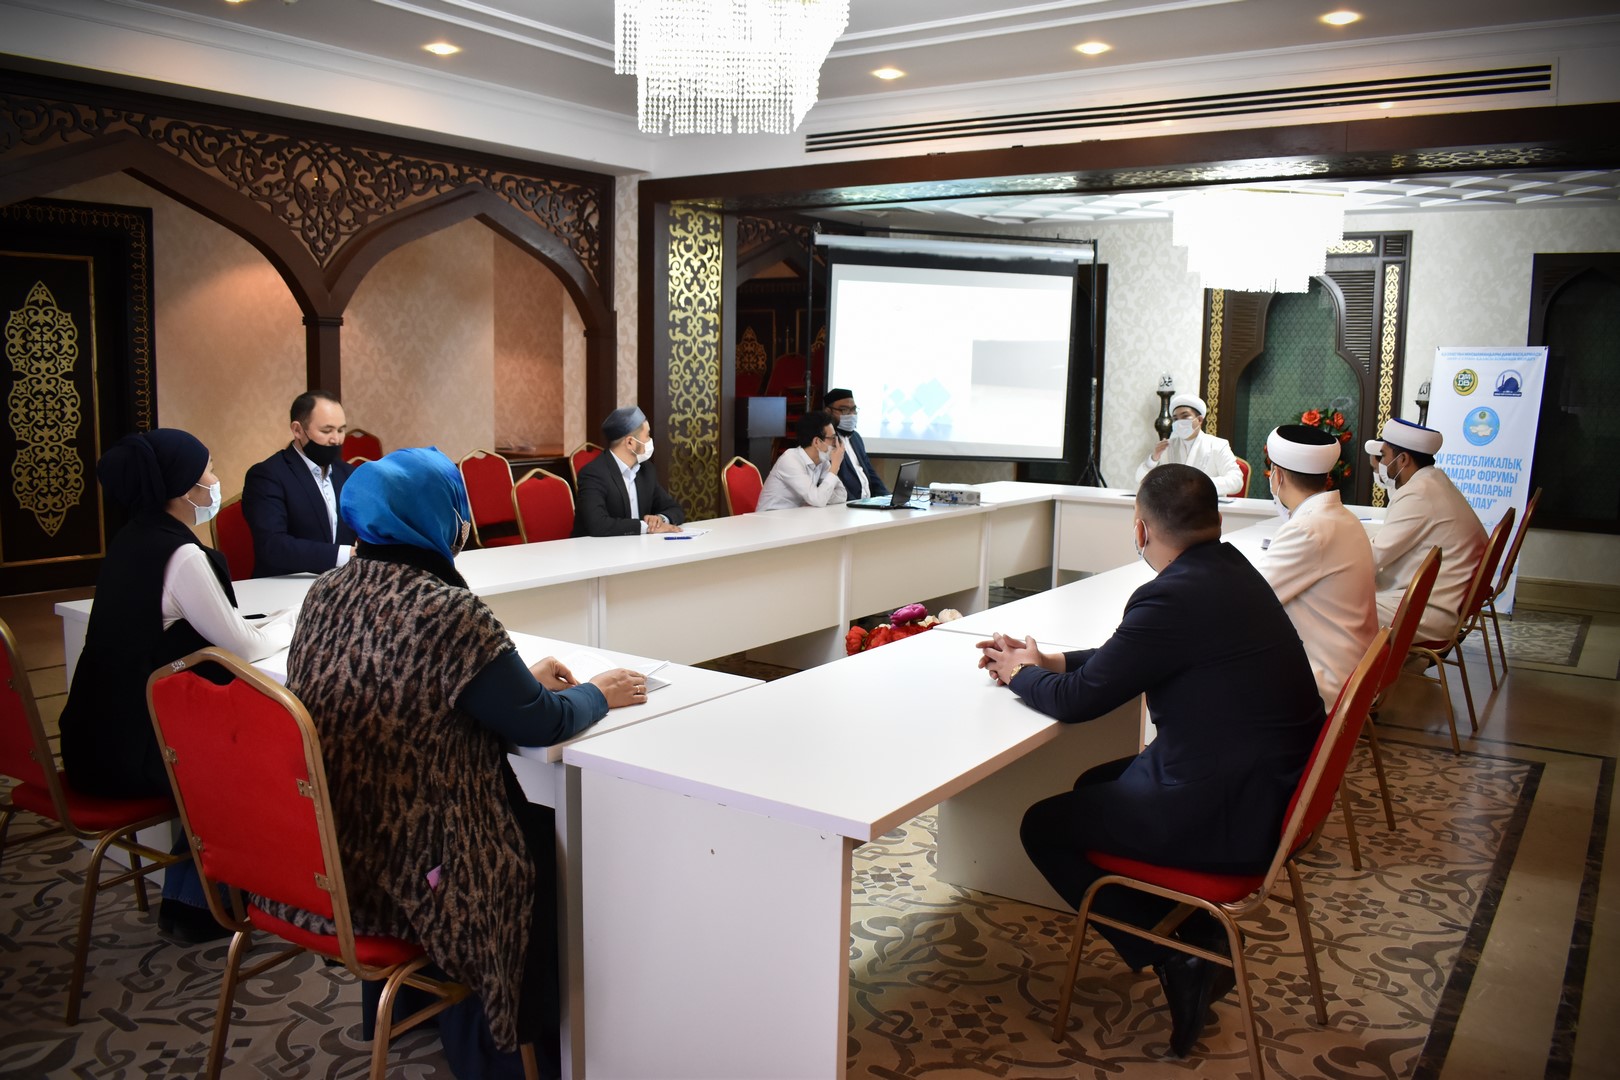 Документы, принятые на Форуме имамов, были обсуждены представительством ДУМК г.Нур-Султан